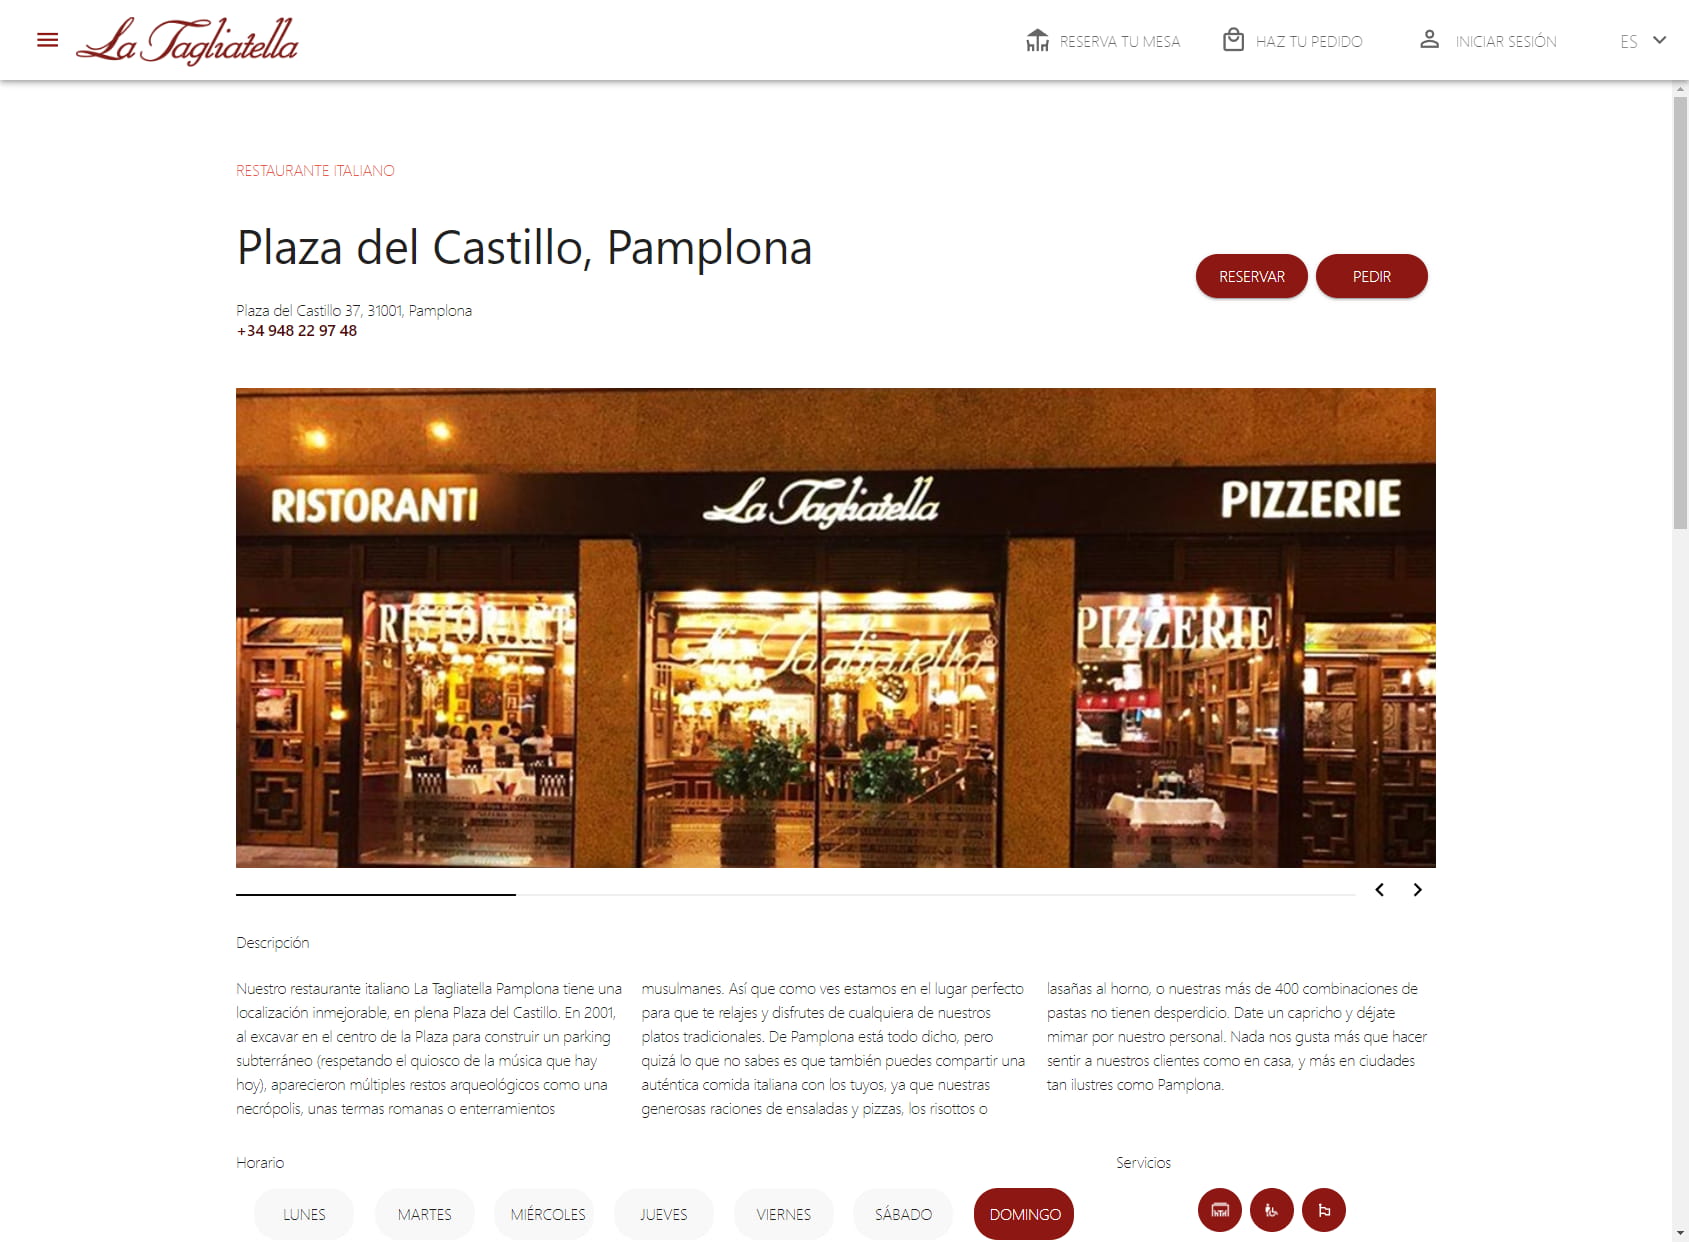 Restaurante La Tagliatella | Plaza del Castillo, Pamplona